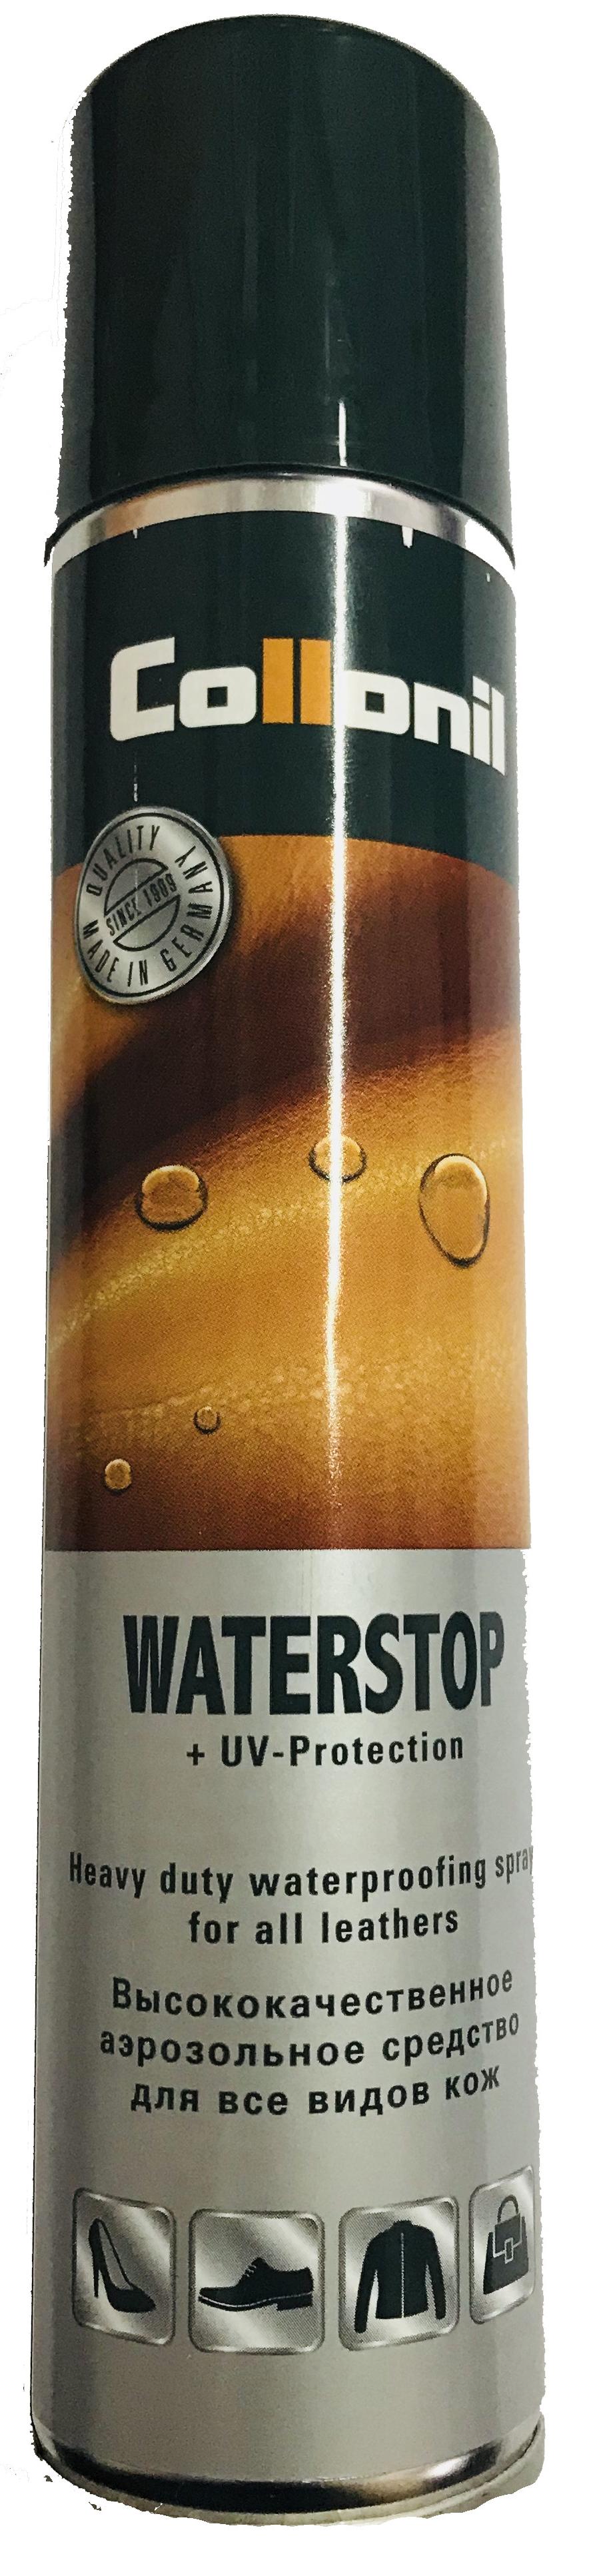 Collonil Waterstop Neutral Аэрозольное средство для пропитки и защиты от воды и ультрафиолетового излучения для всех видов кож Нейтрального цвета 200 мл